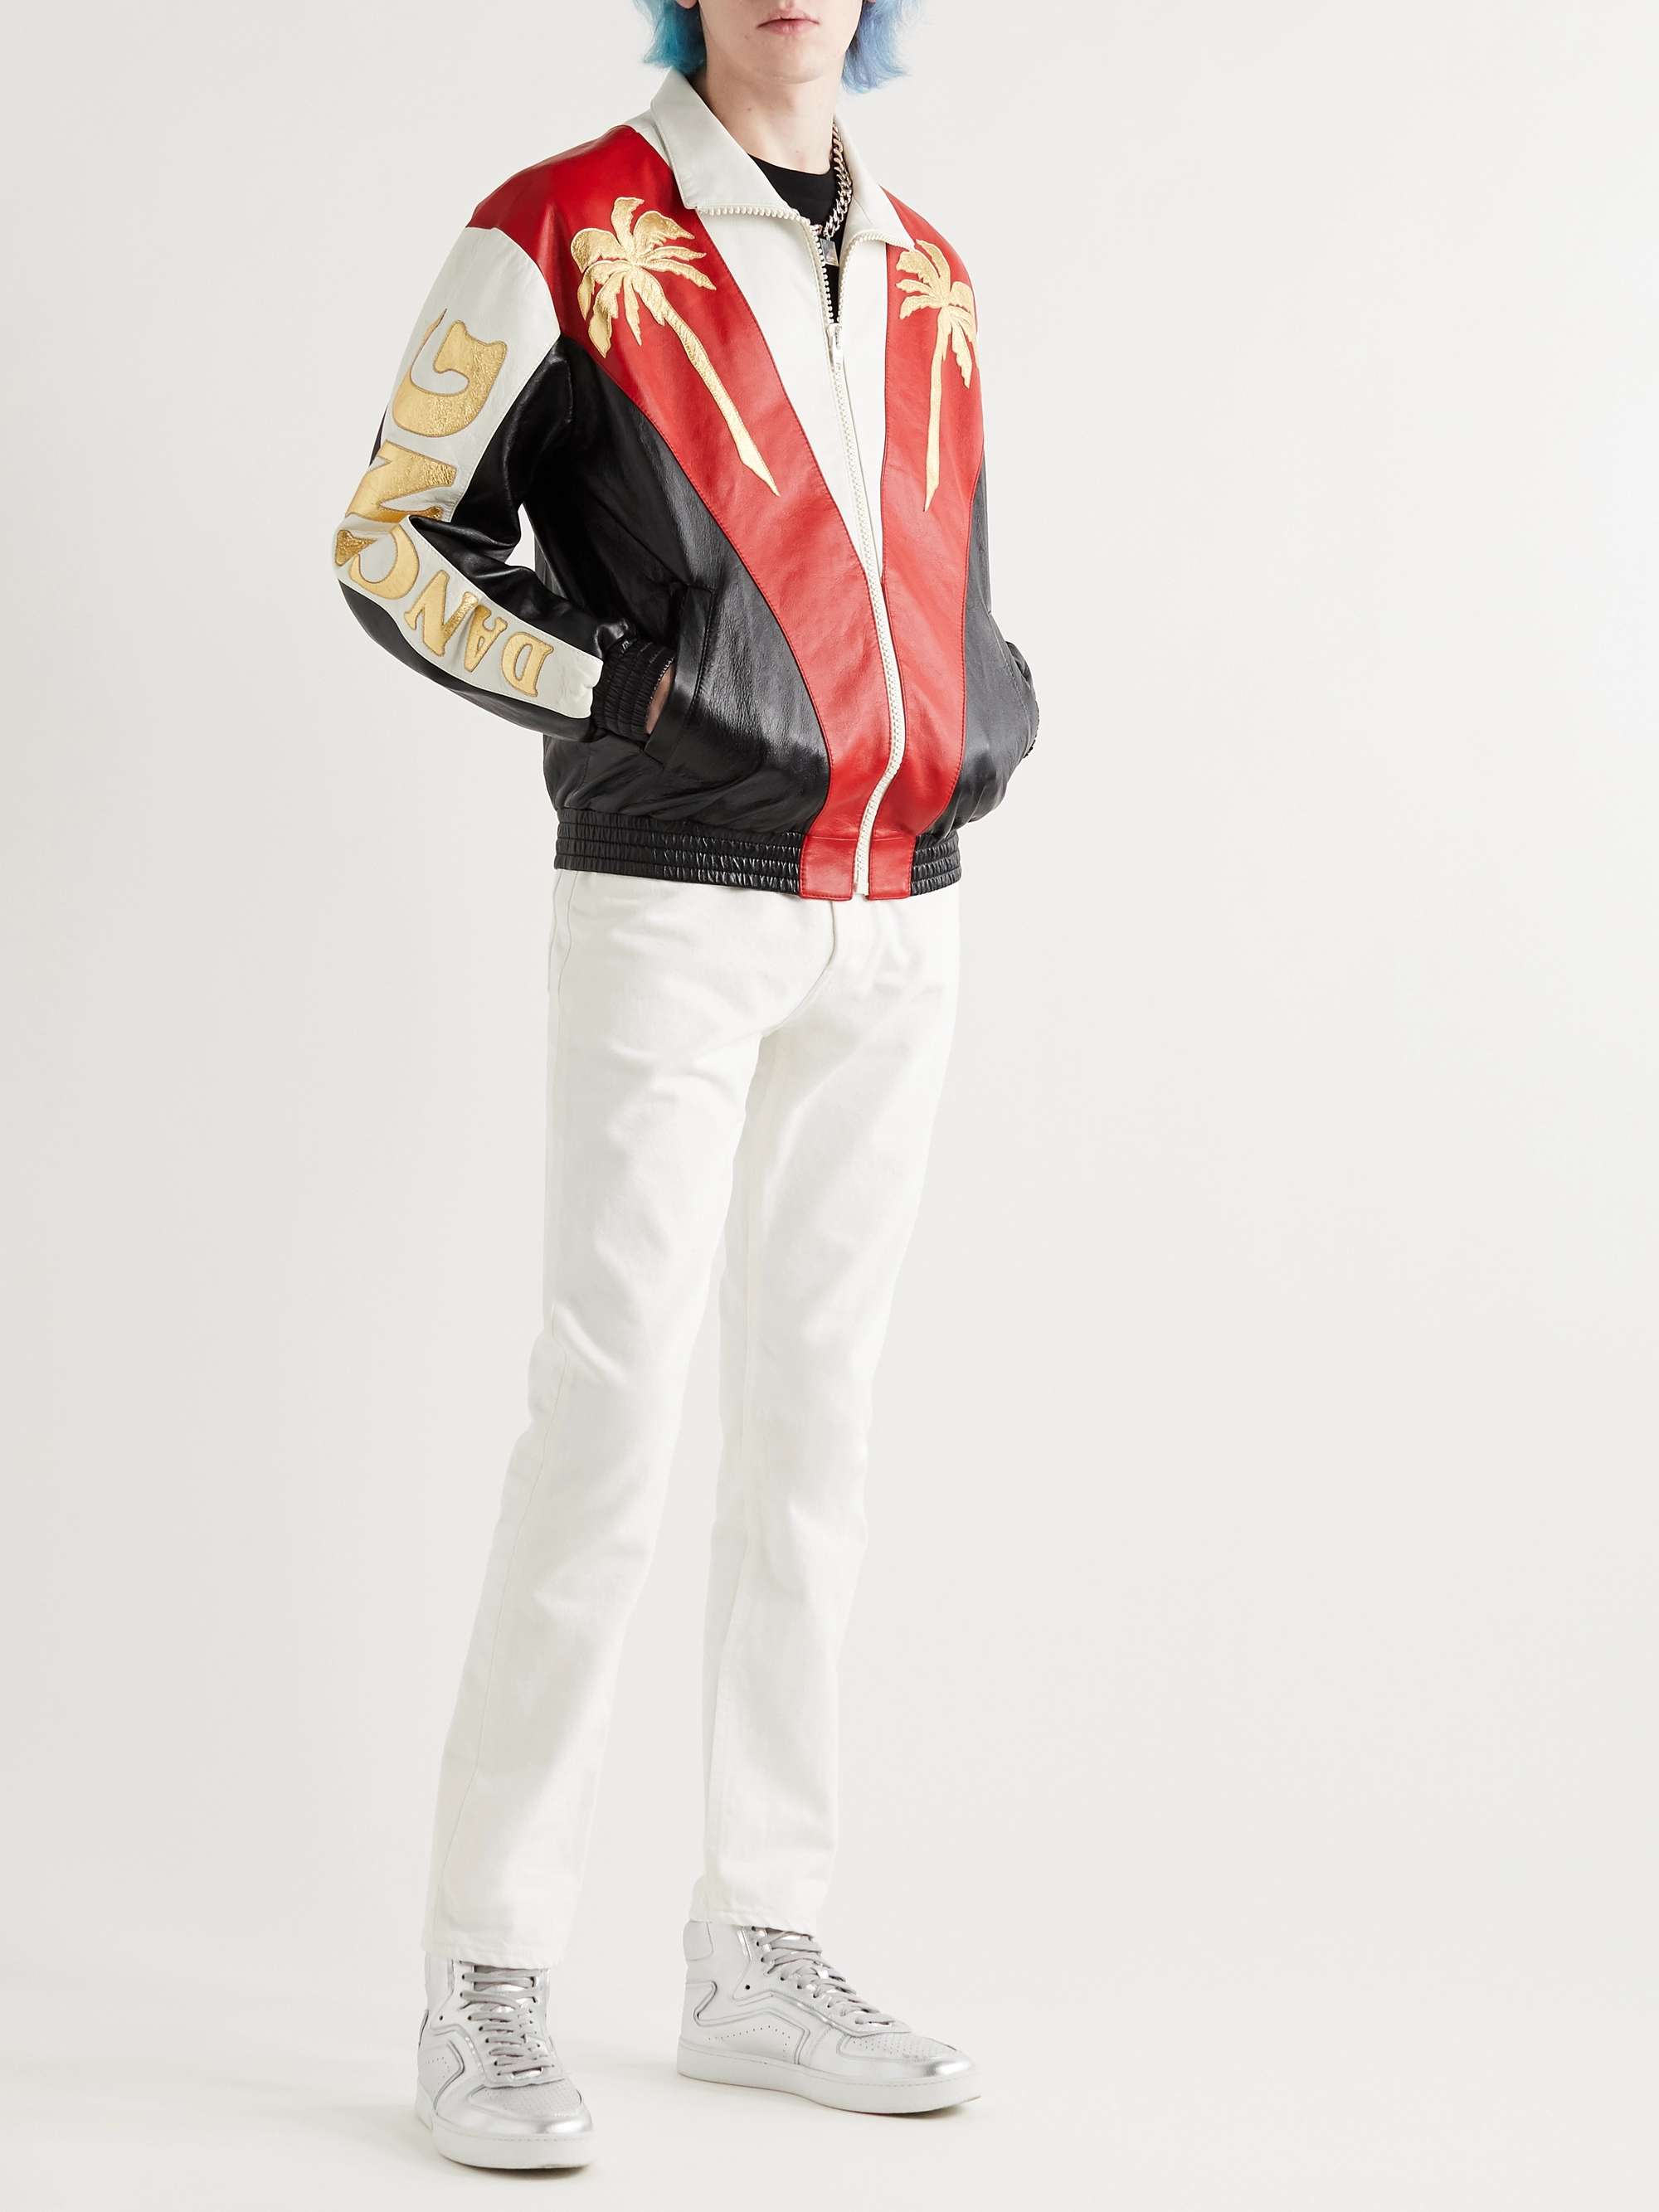 CELINE HOMME Appliquéd Colour-Block Leather Jacket